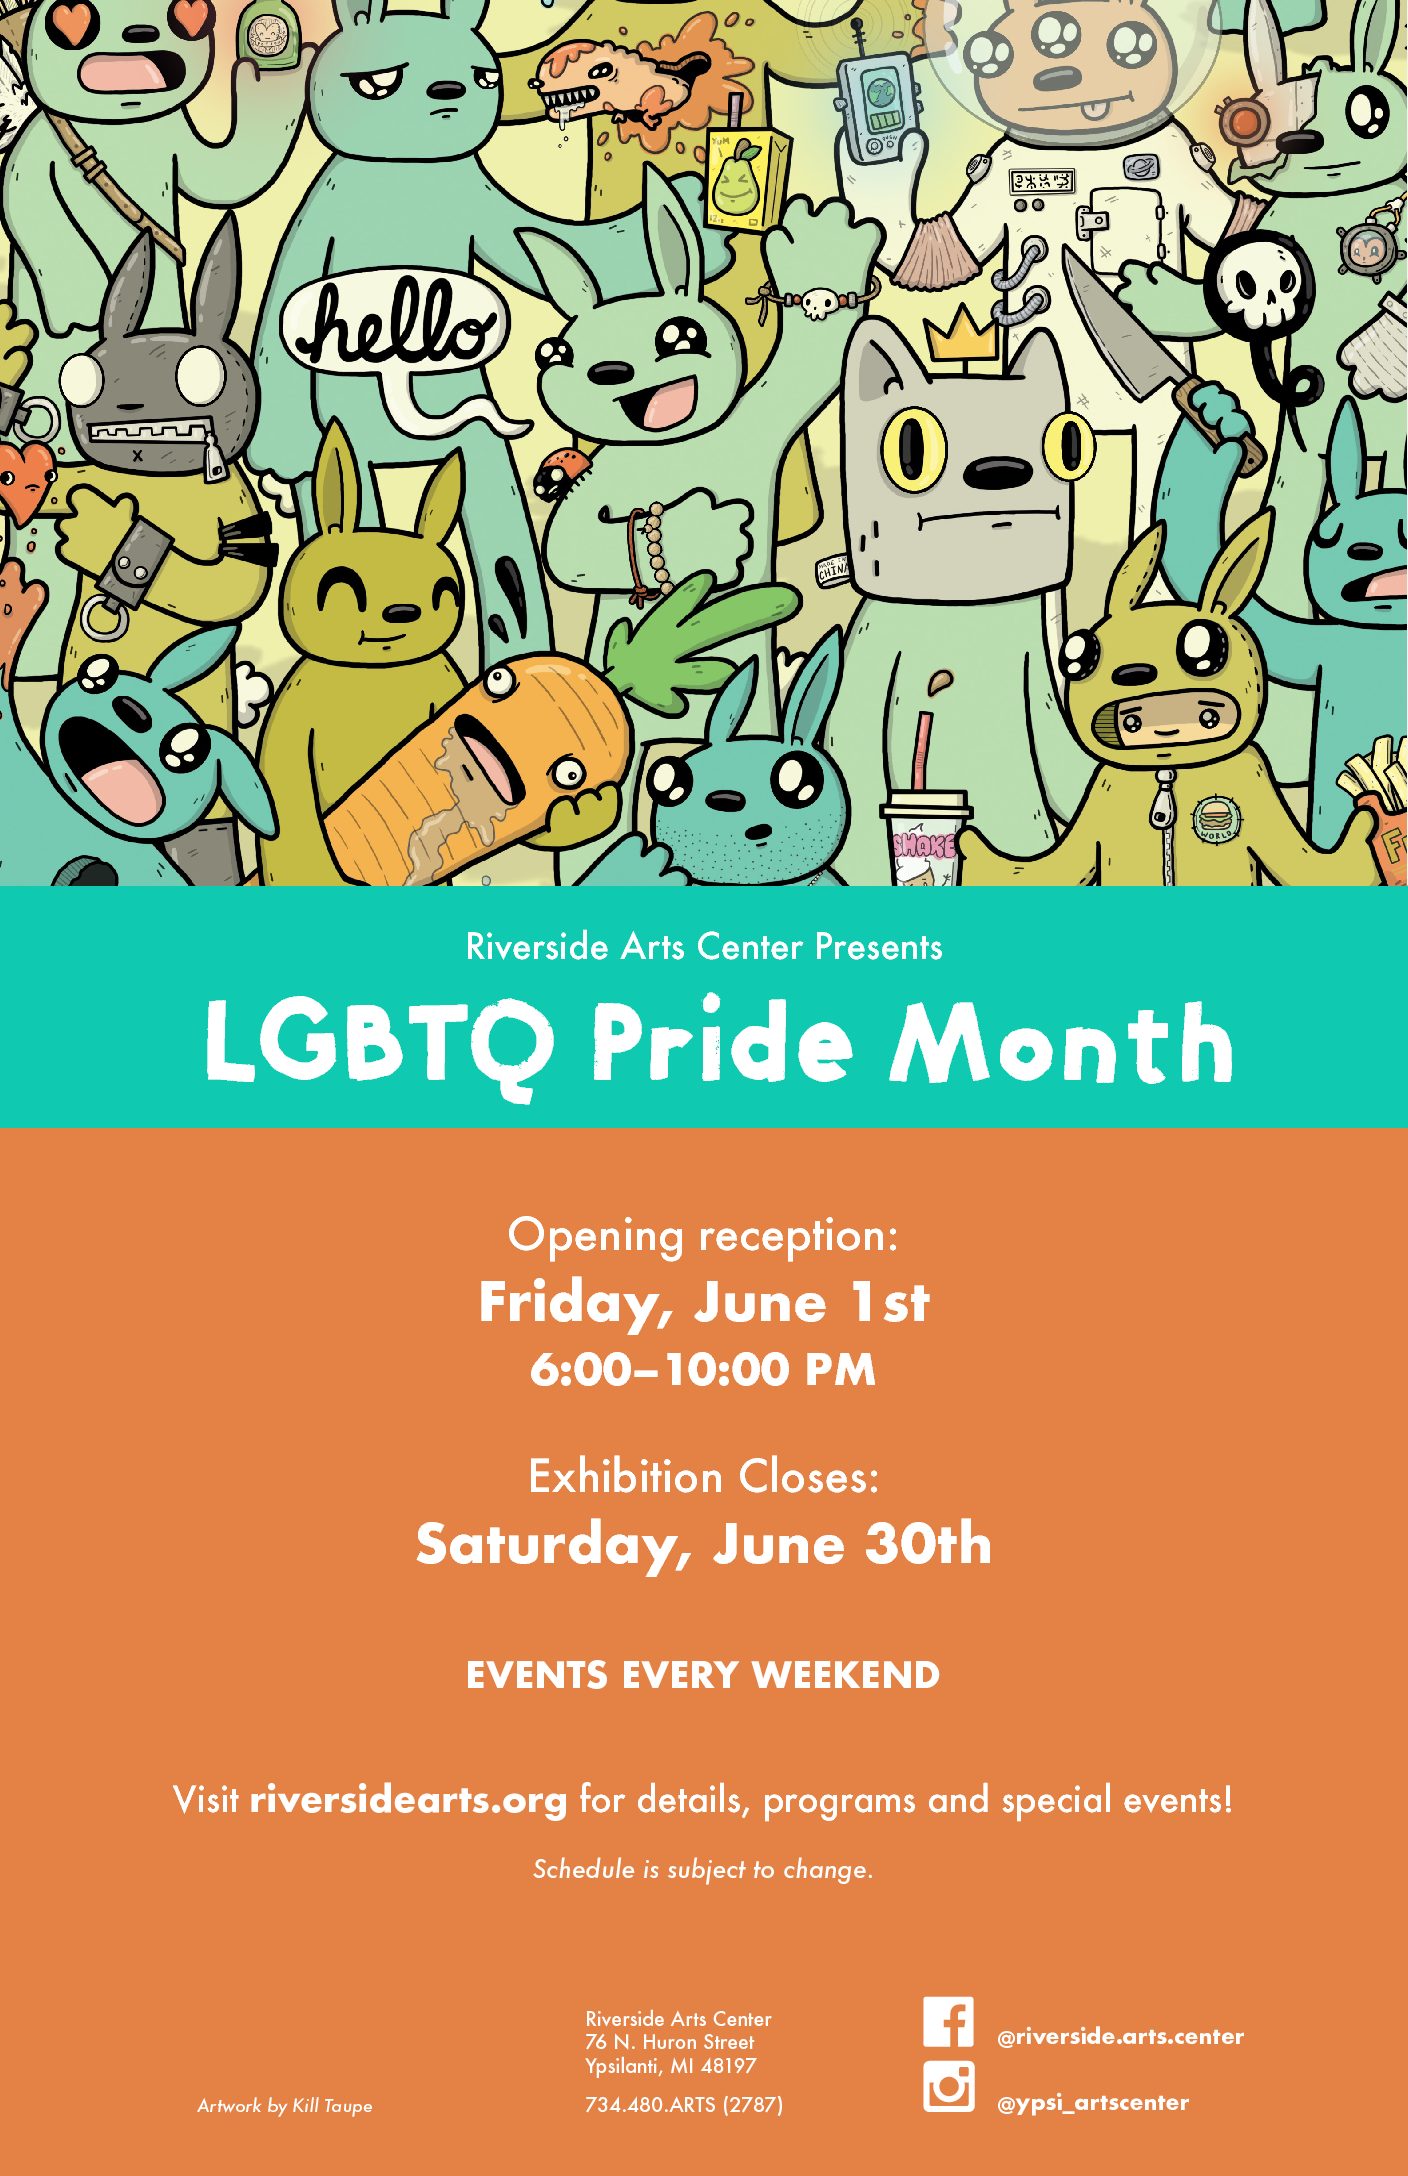 LGBTQ Pride Month Exhibit